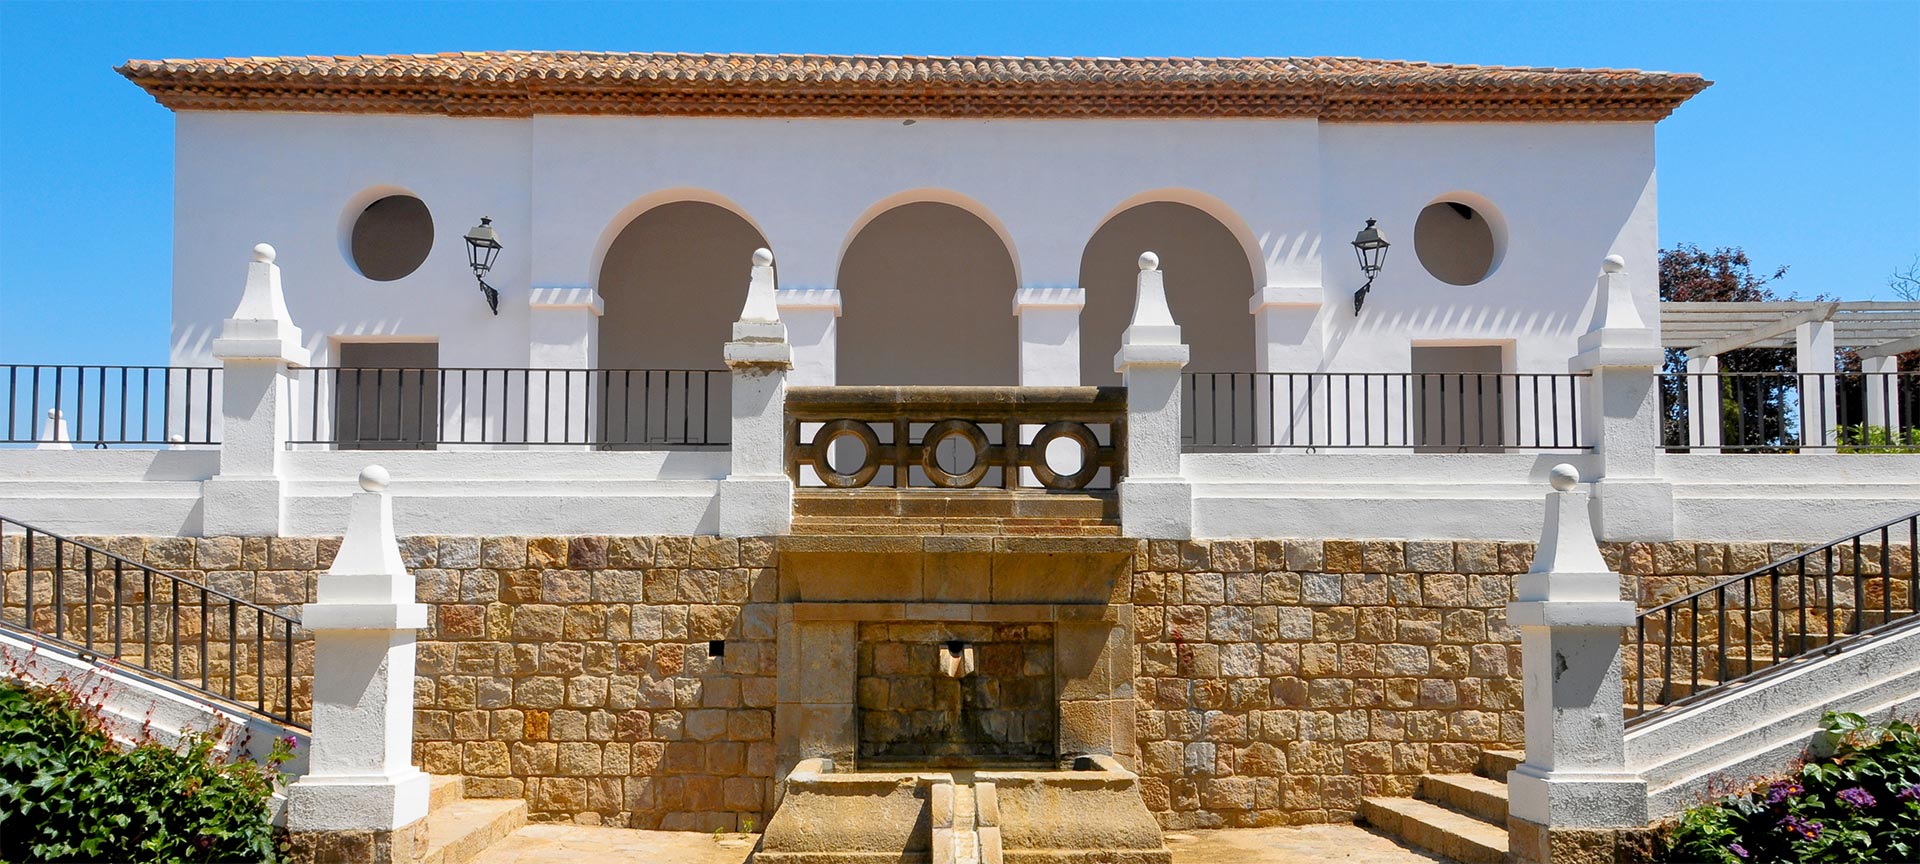 Wit mediterraan gebouw met bogen en fontein.